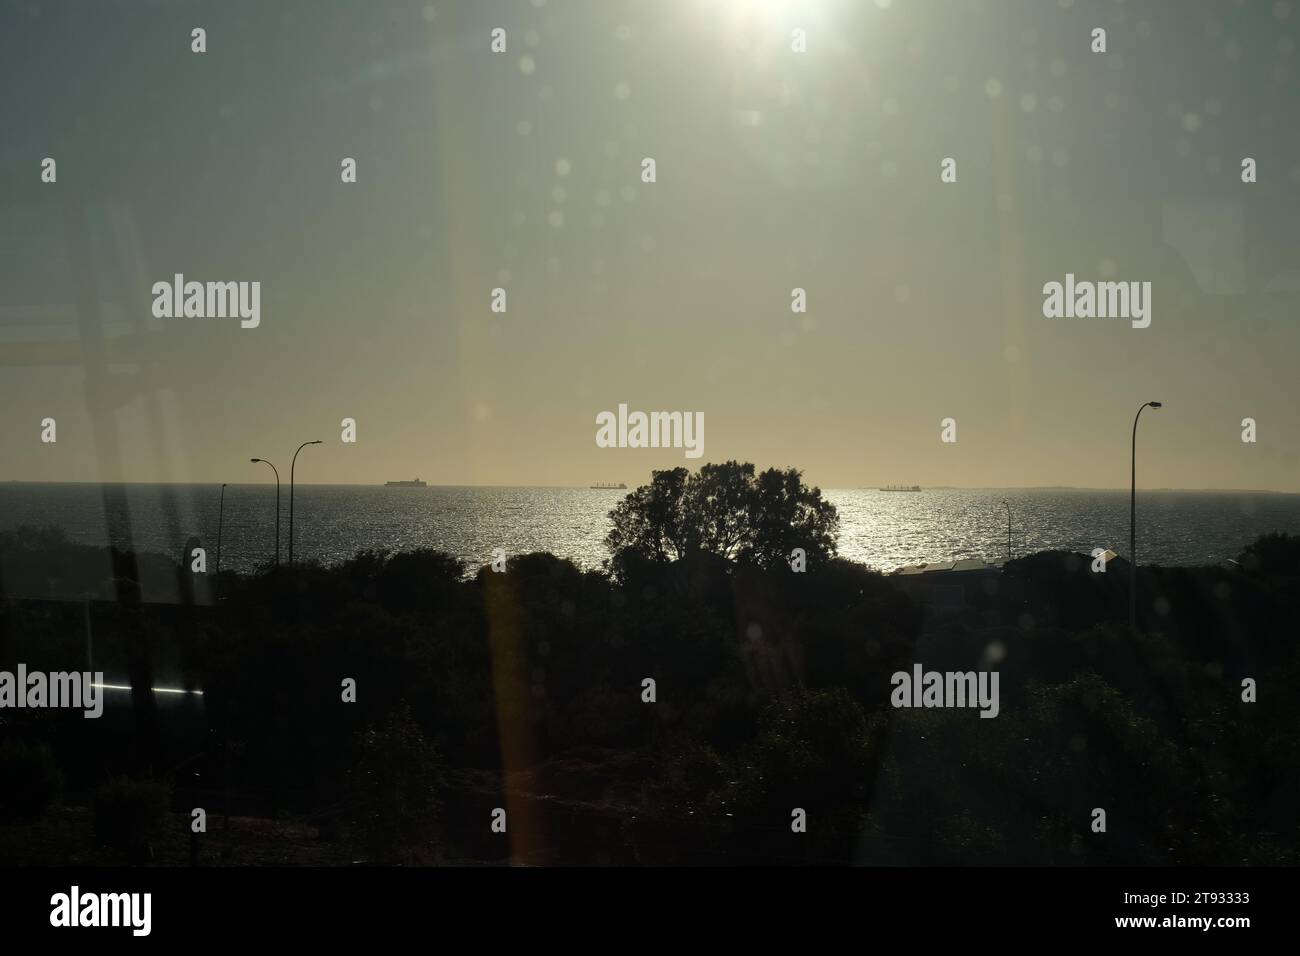 Vista de la ventana desde un tren, el sol sobre el Océano Índico, pequeños barcos en el horizonte, un paisaje en silueta a través de vidrios tintados, manchas de reflejos Foto de stock